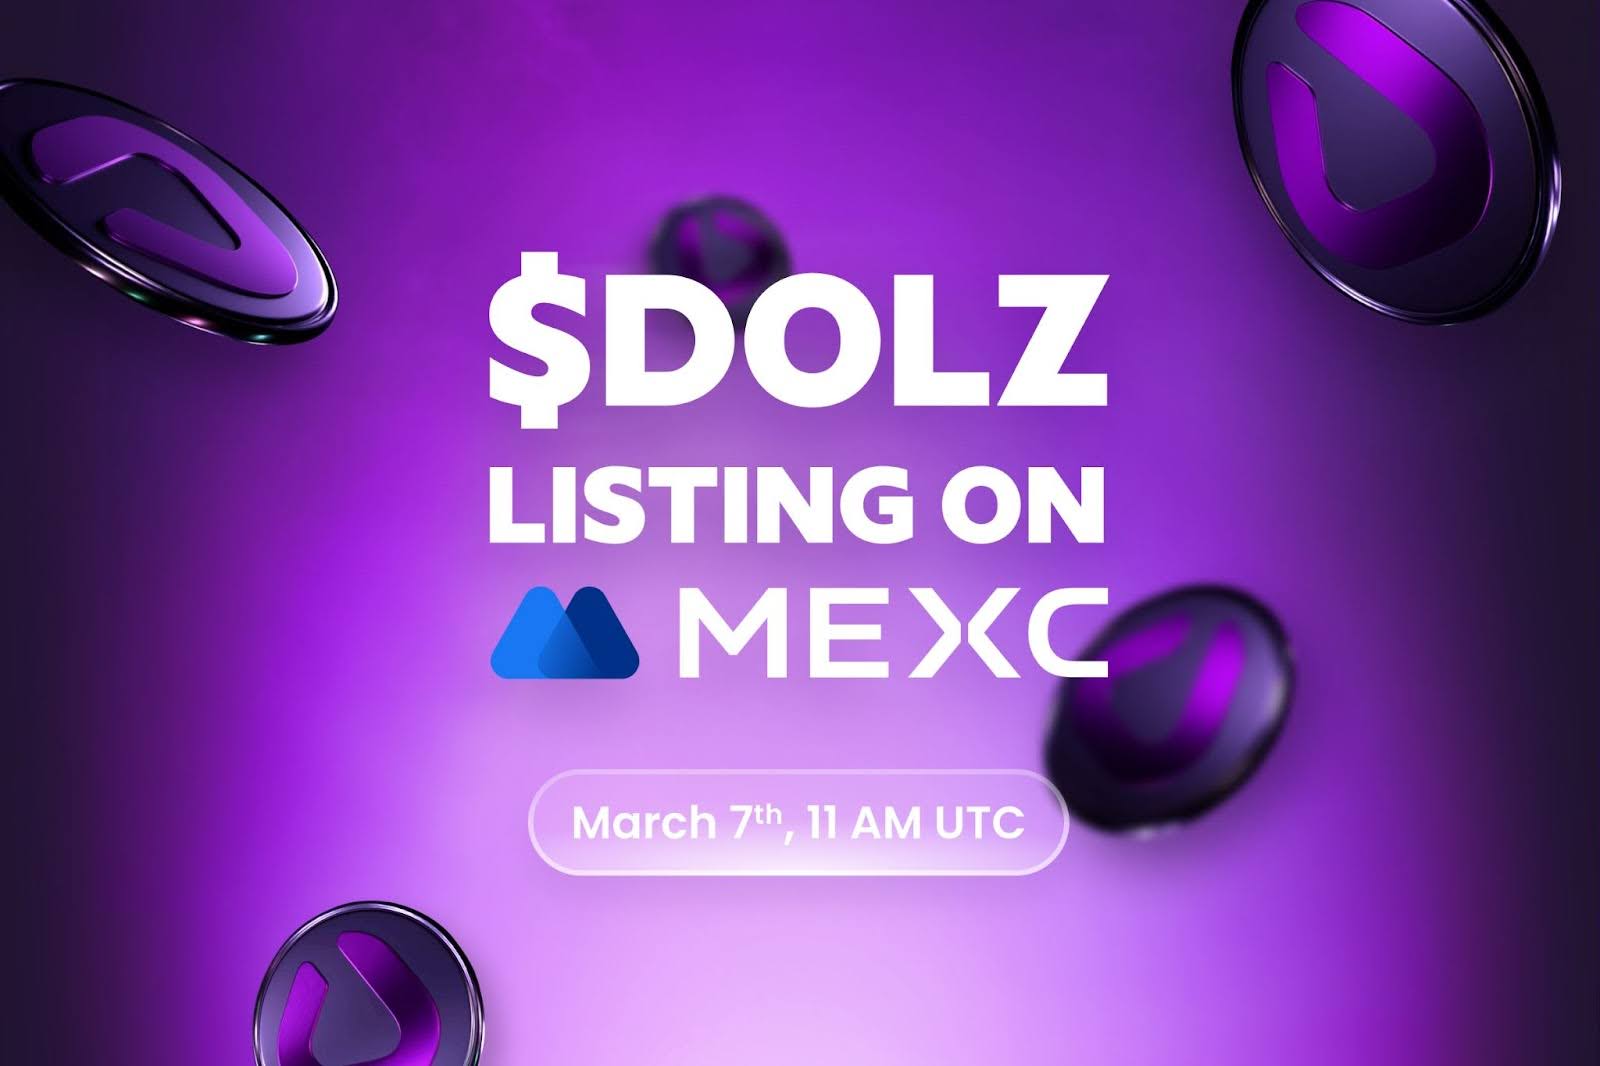 Listing crypto du $DOLZ sur MEXC le 7 mars prochain !